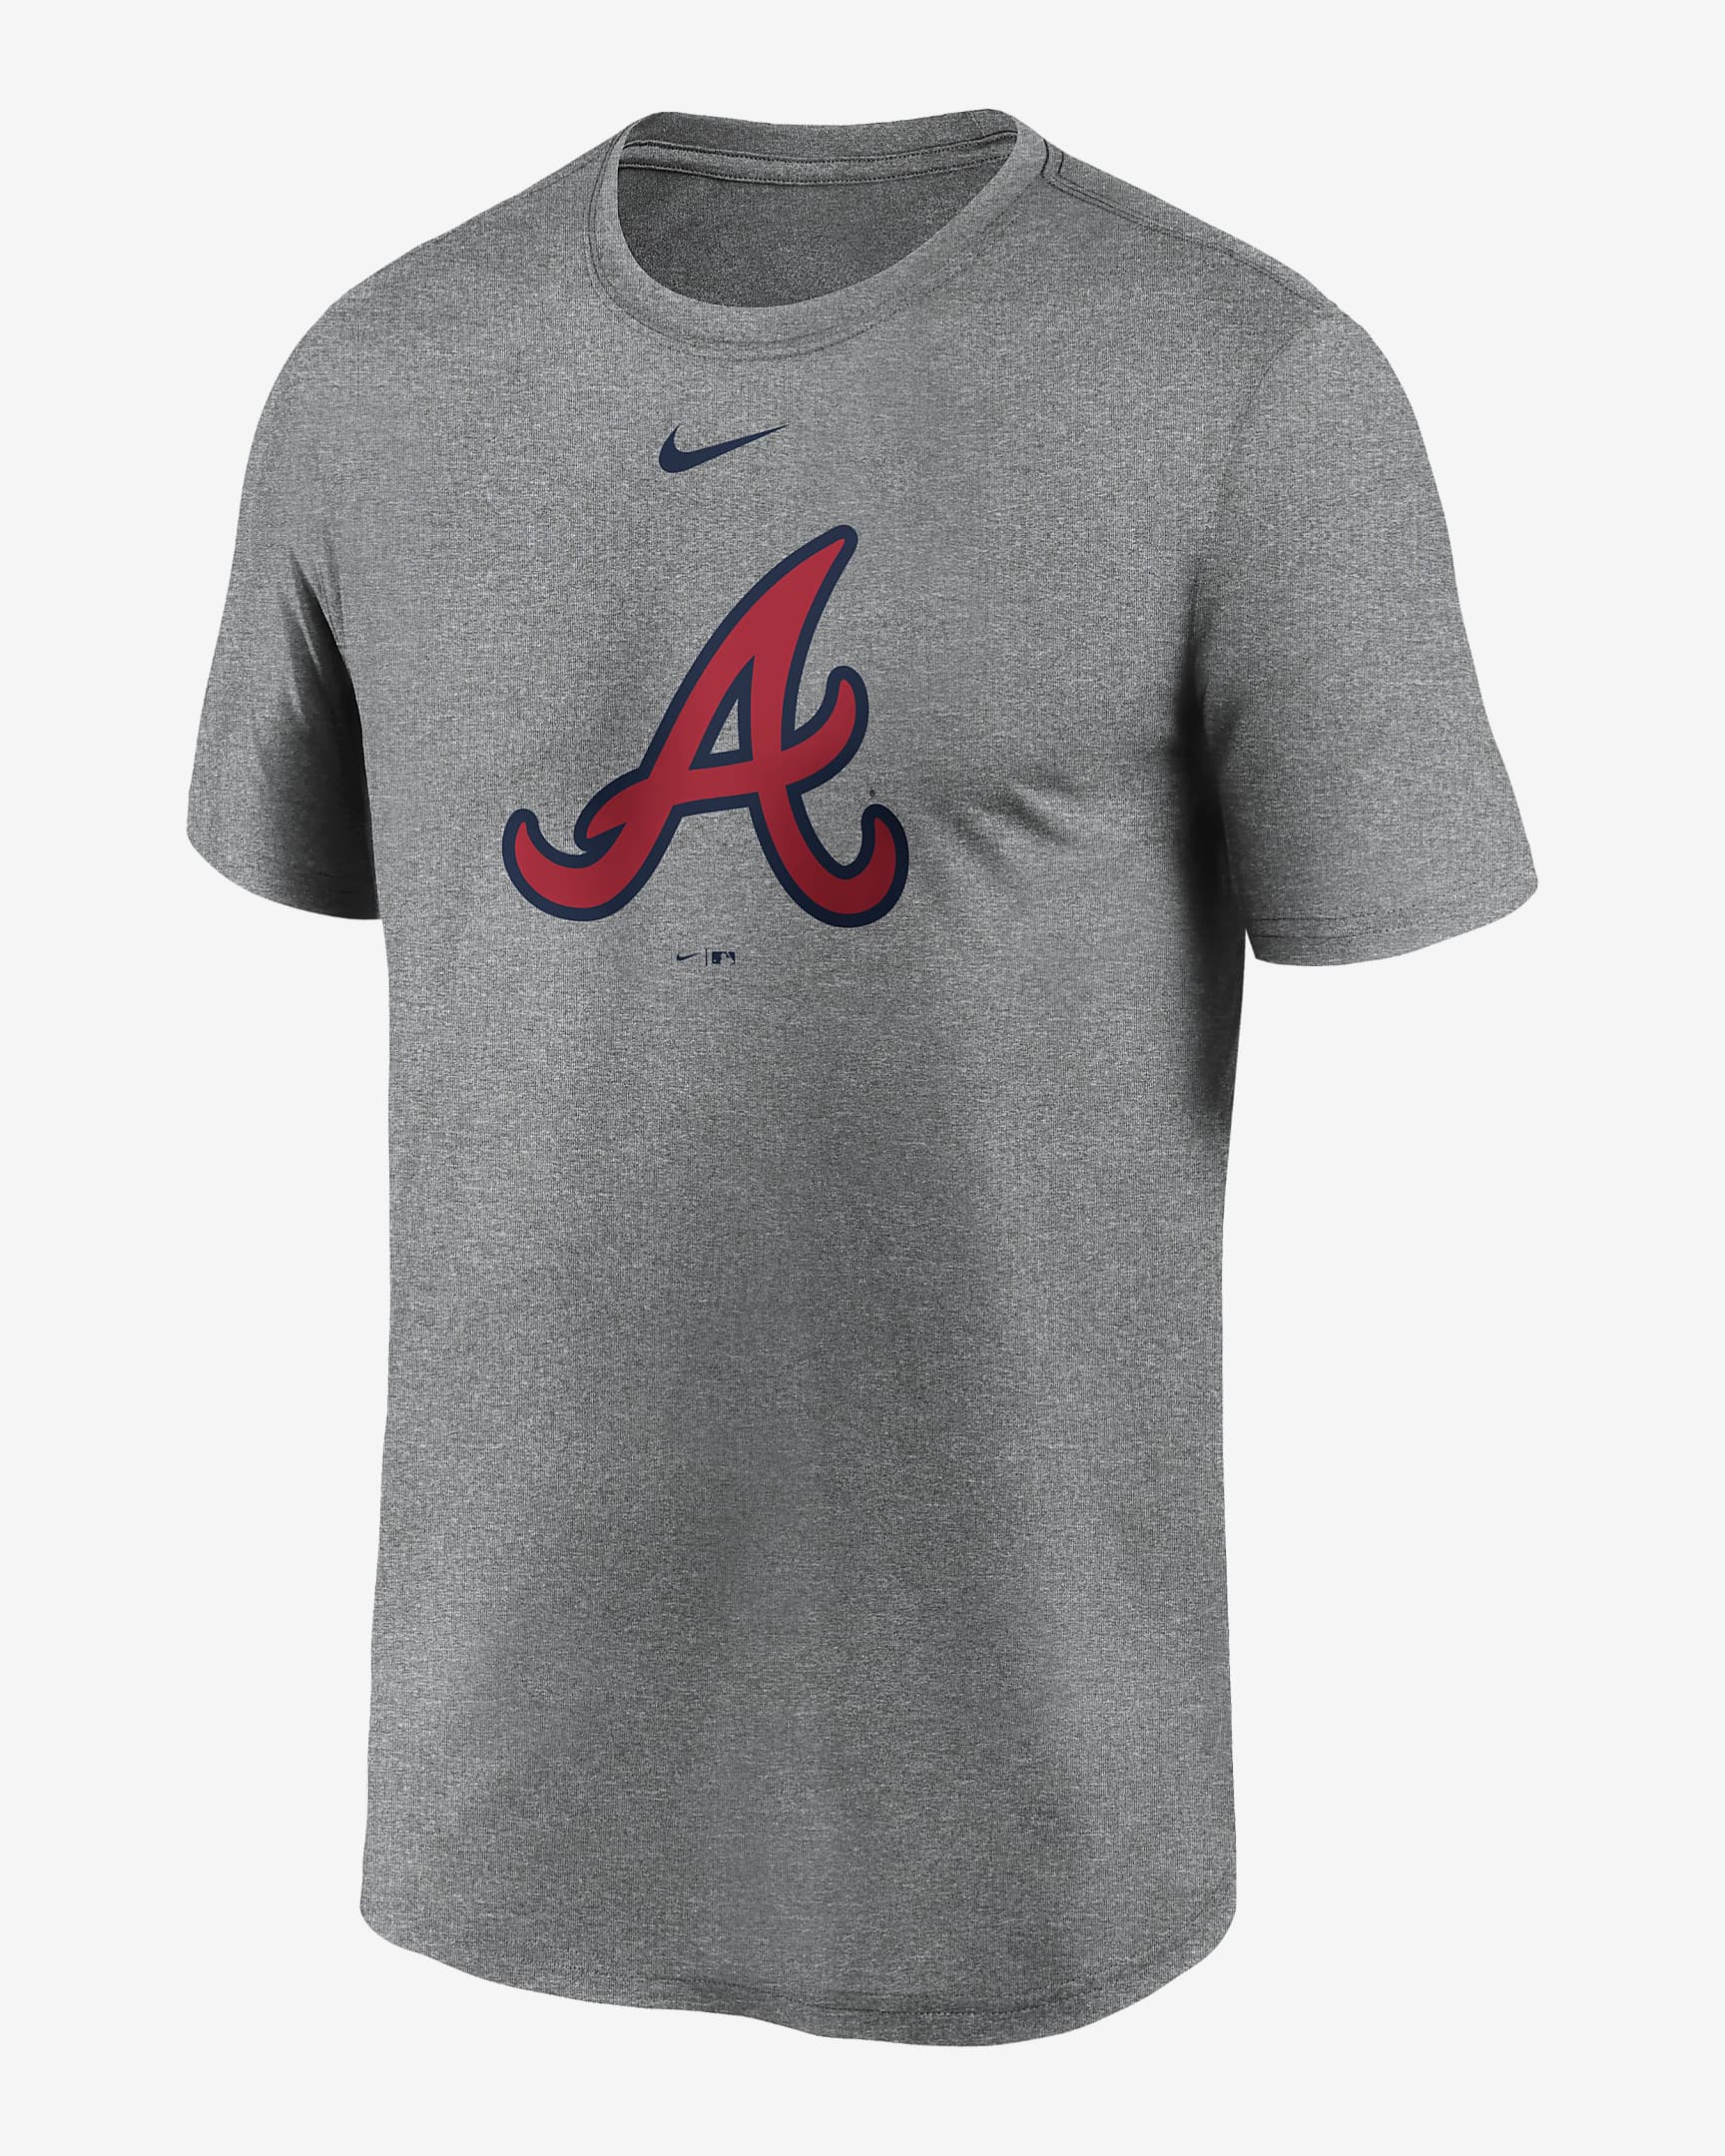 Nike Dri-FIT Logo Legend (MLB Atlanta Braves) Men's T-Shirt. Nike.com